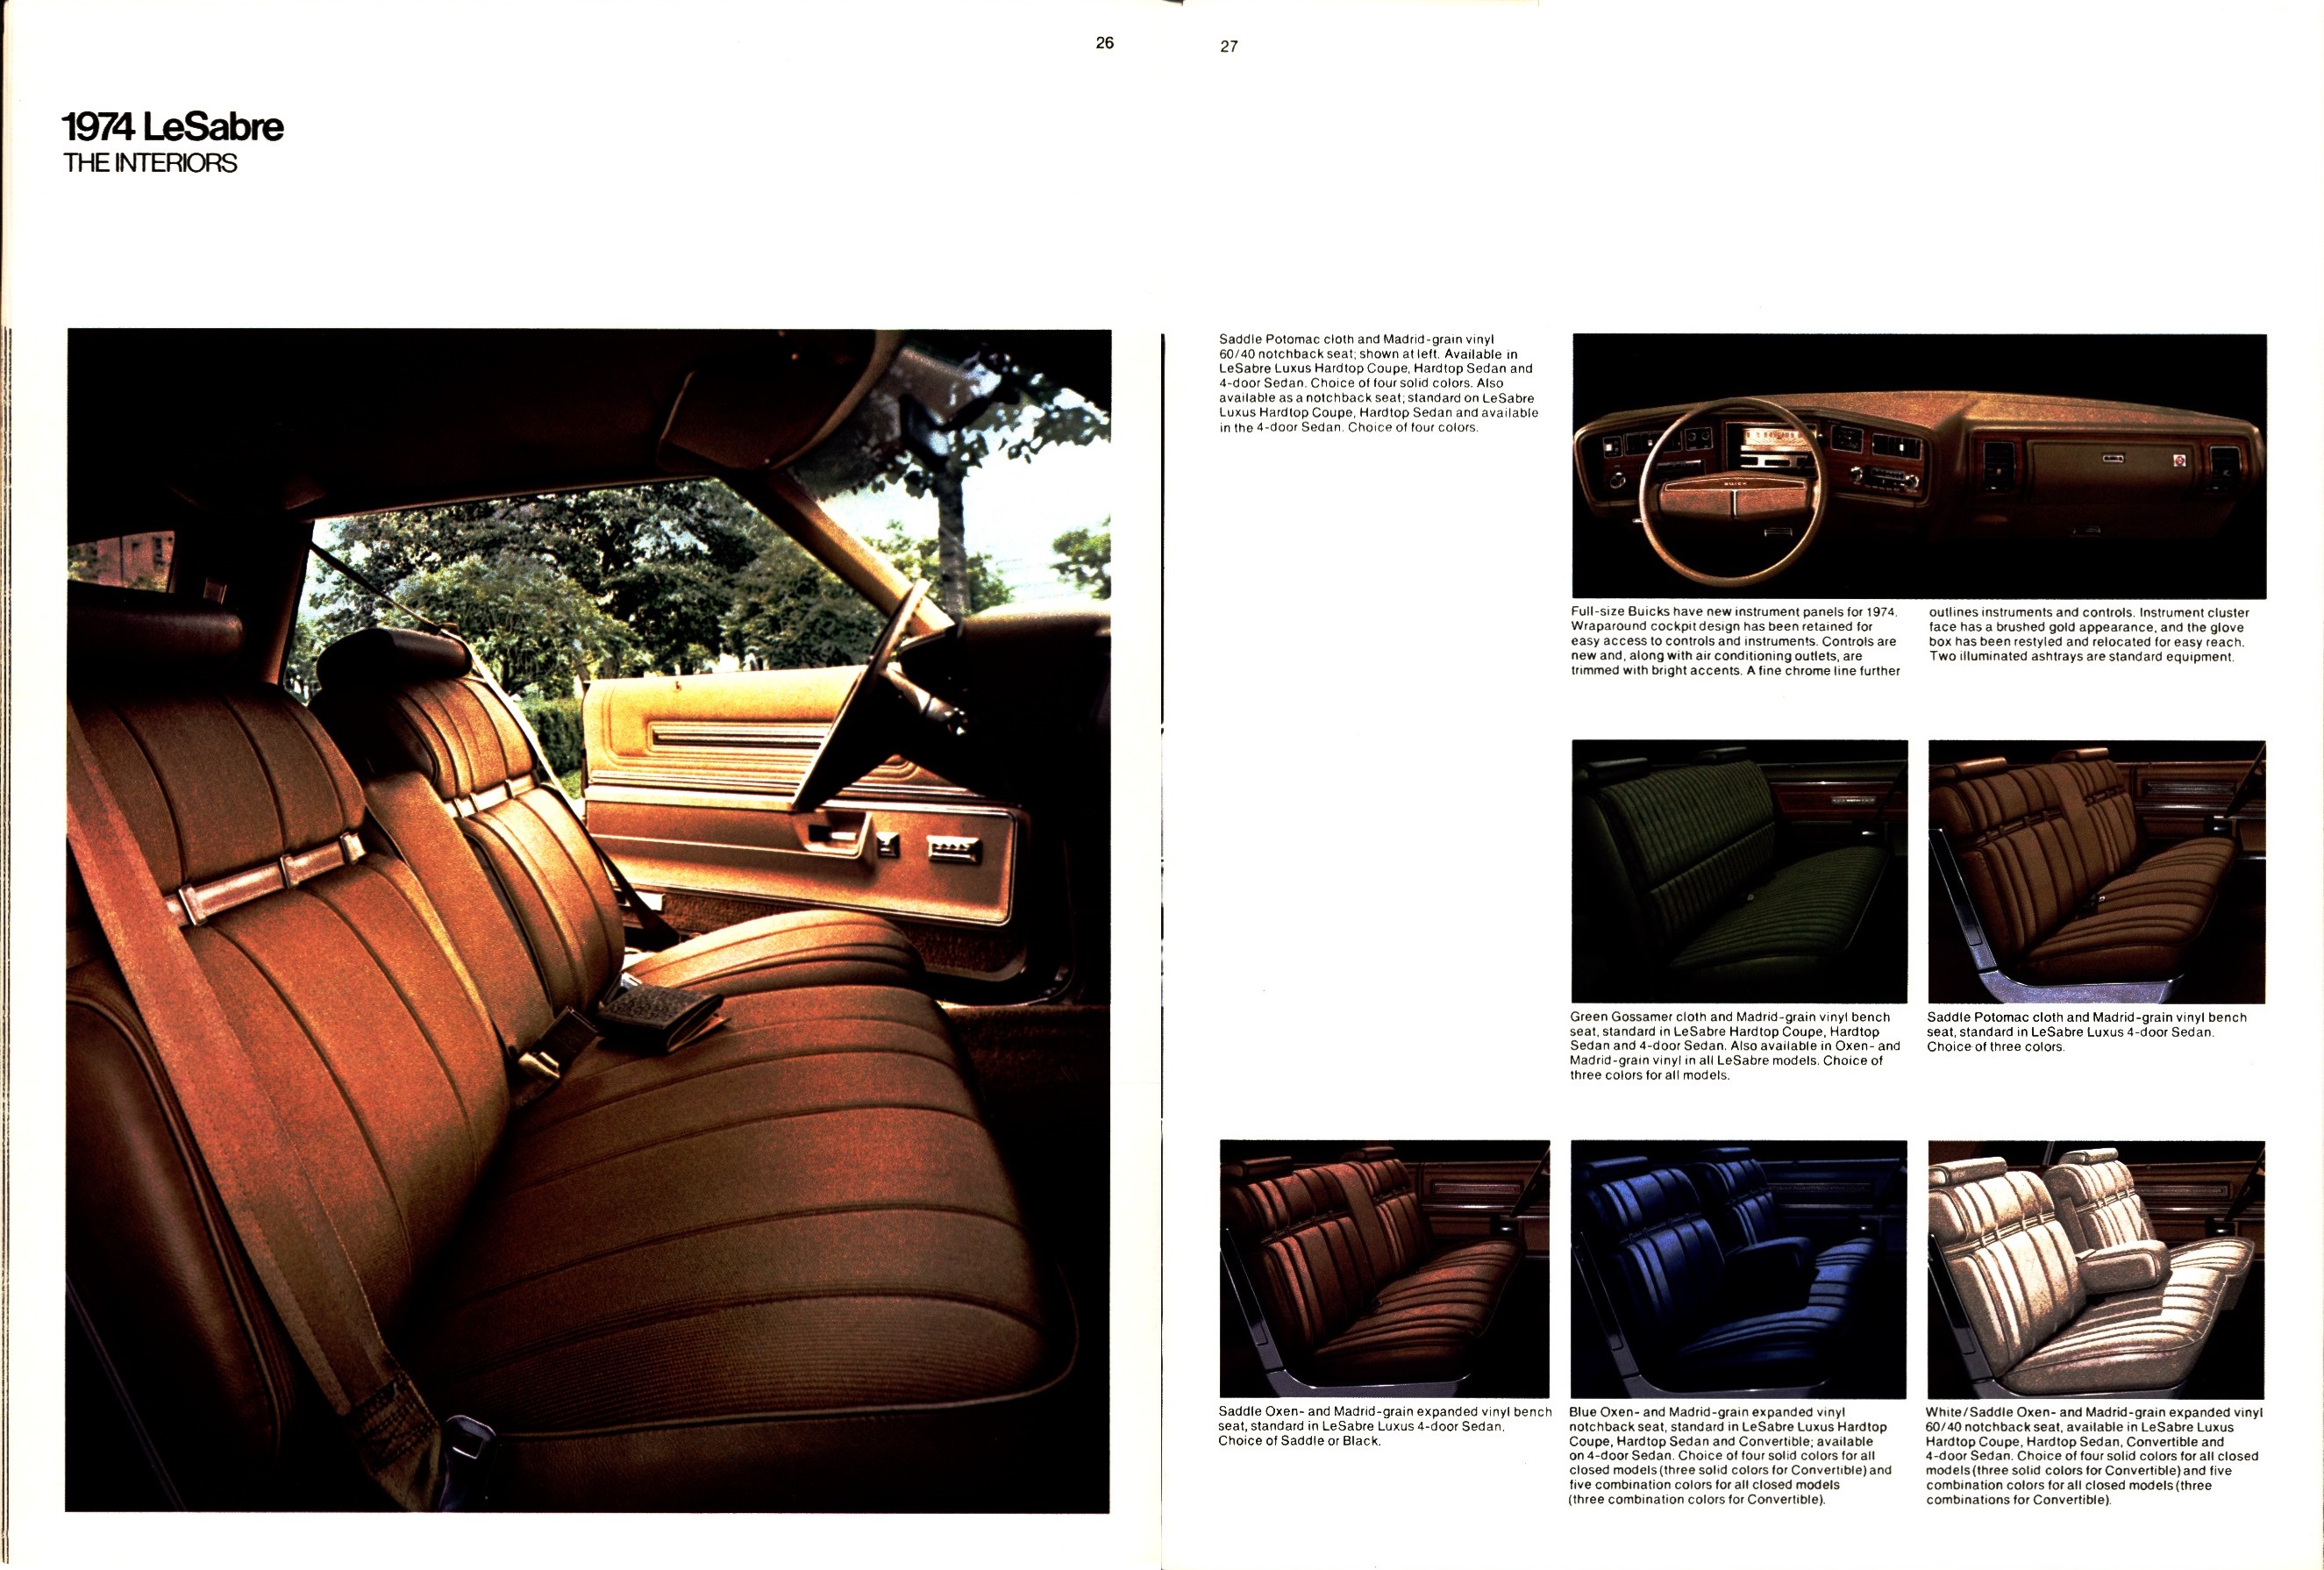 1974 Buick 26-27